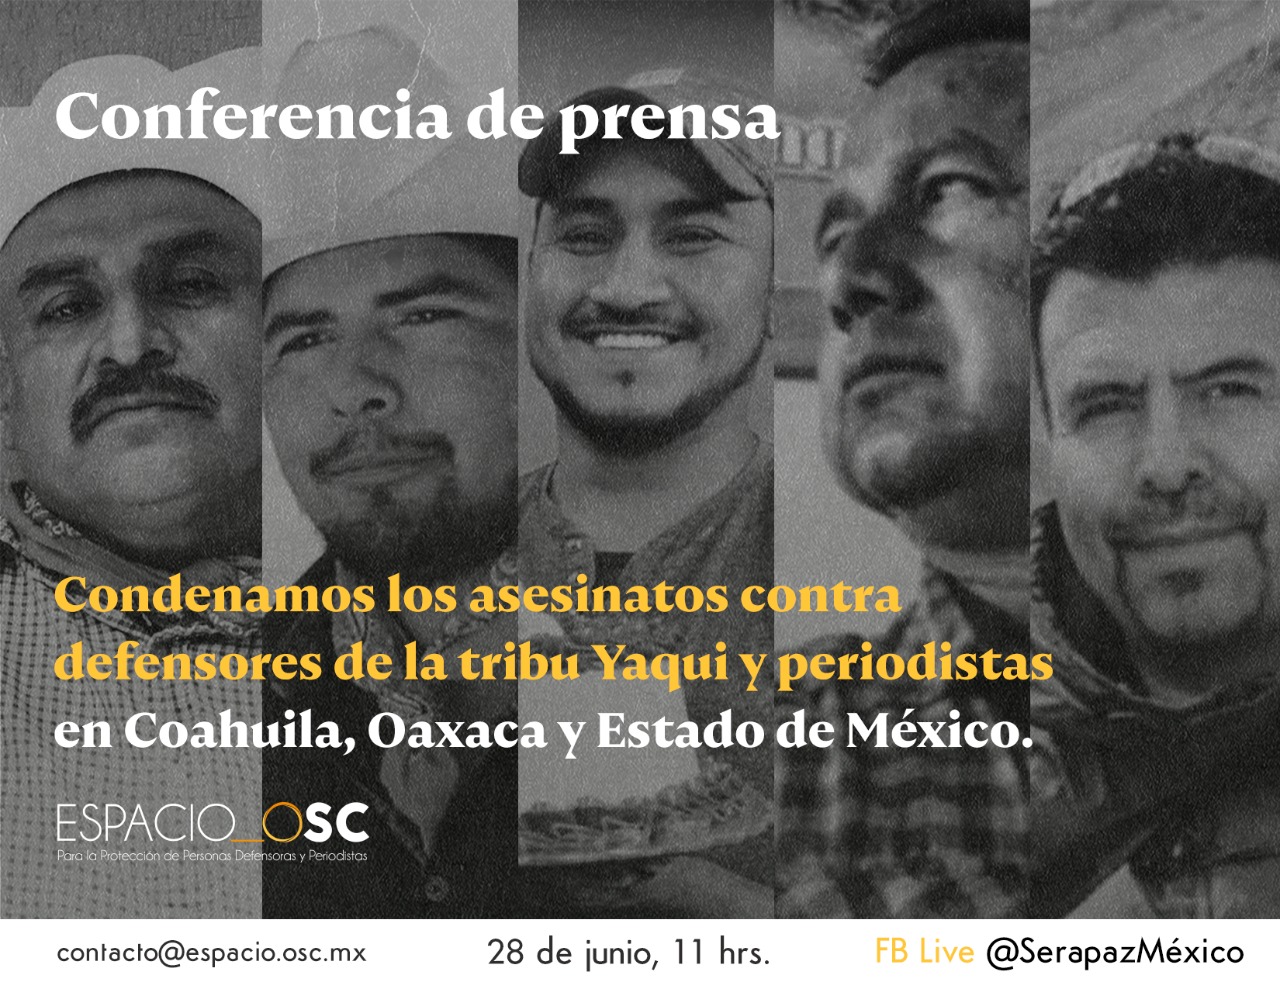 Personas y organizaciones de la sociedad civil condenamos los asesinatos contra defensores de la tribu Yaqui y periodistas en Coahuila, Oaxaca y Estado de México.  